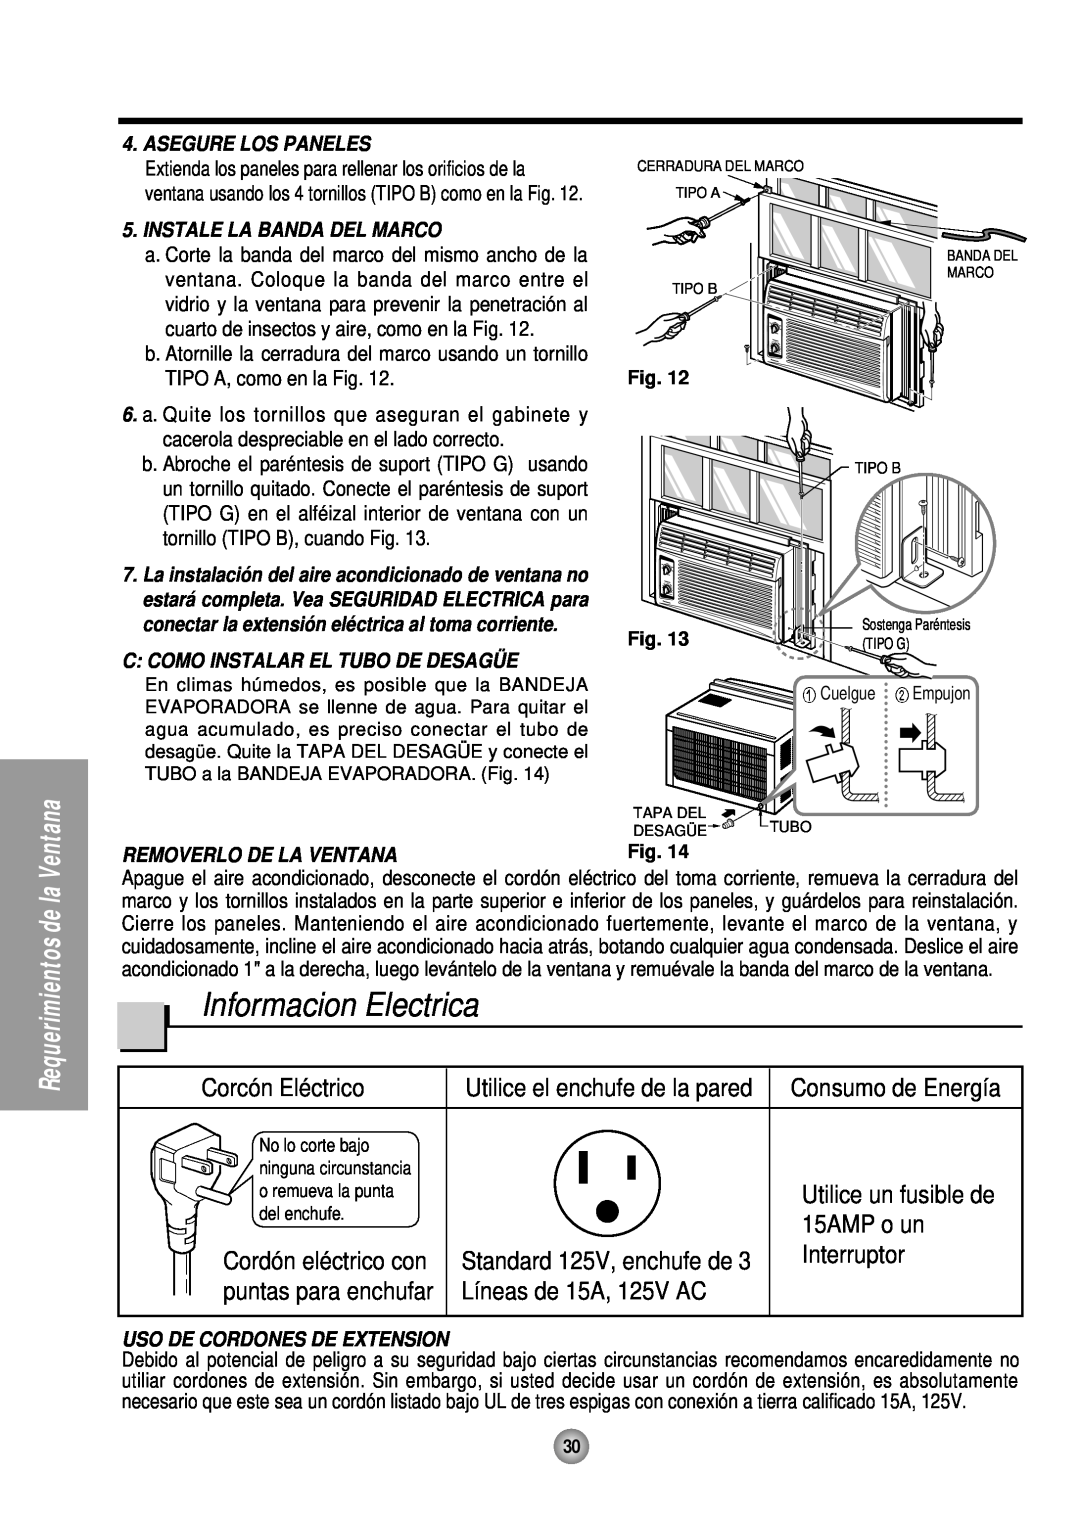 Panasonic CW-C53HU Informacion Electrica, Corcón Eléctrico, Utilice el enchufe de la pared, 15AMP o un, Interruptor 